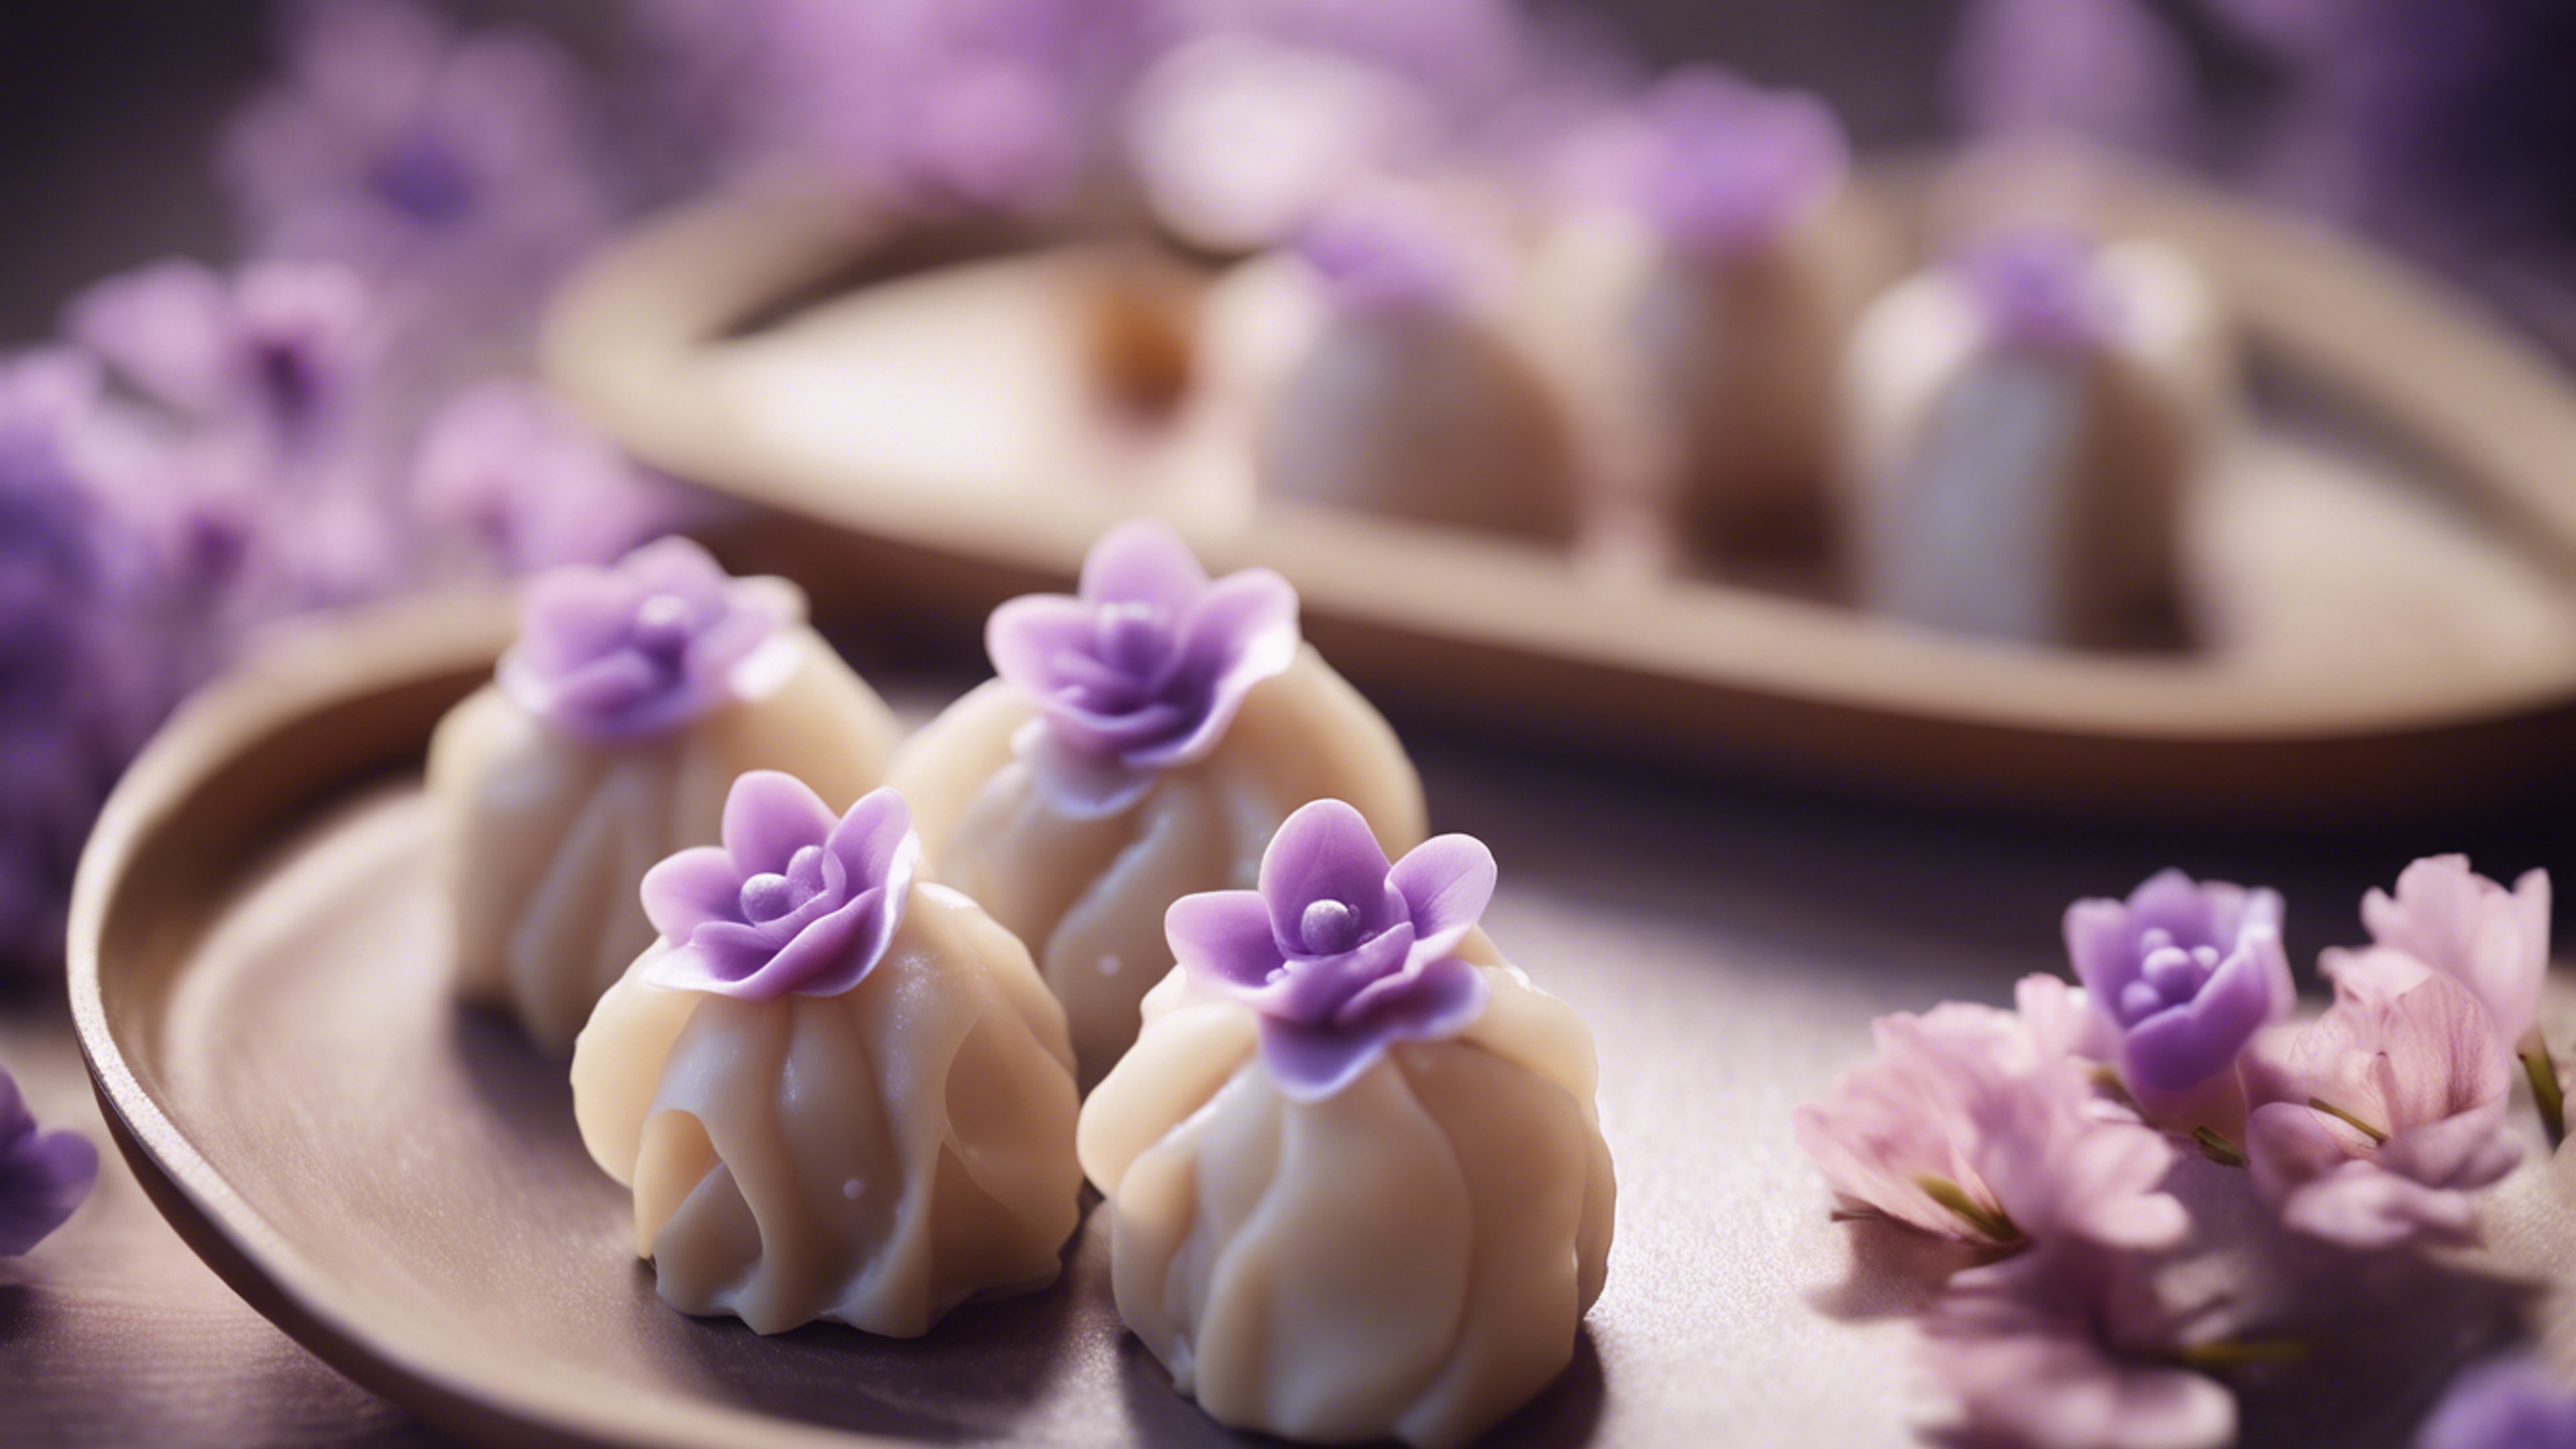 A kawaii styled dim sum dish, with delicate and light purple dumplings shaped like flowers. Tapeta[29e111c9b013403690b4]